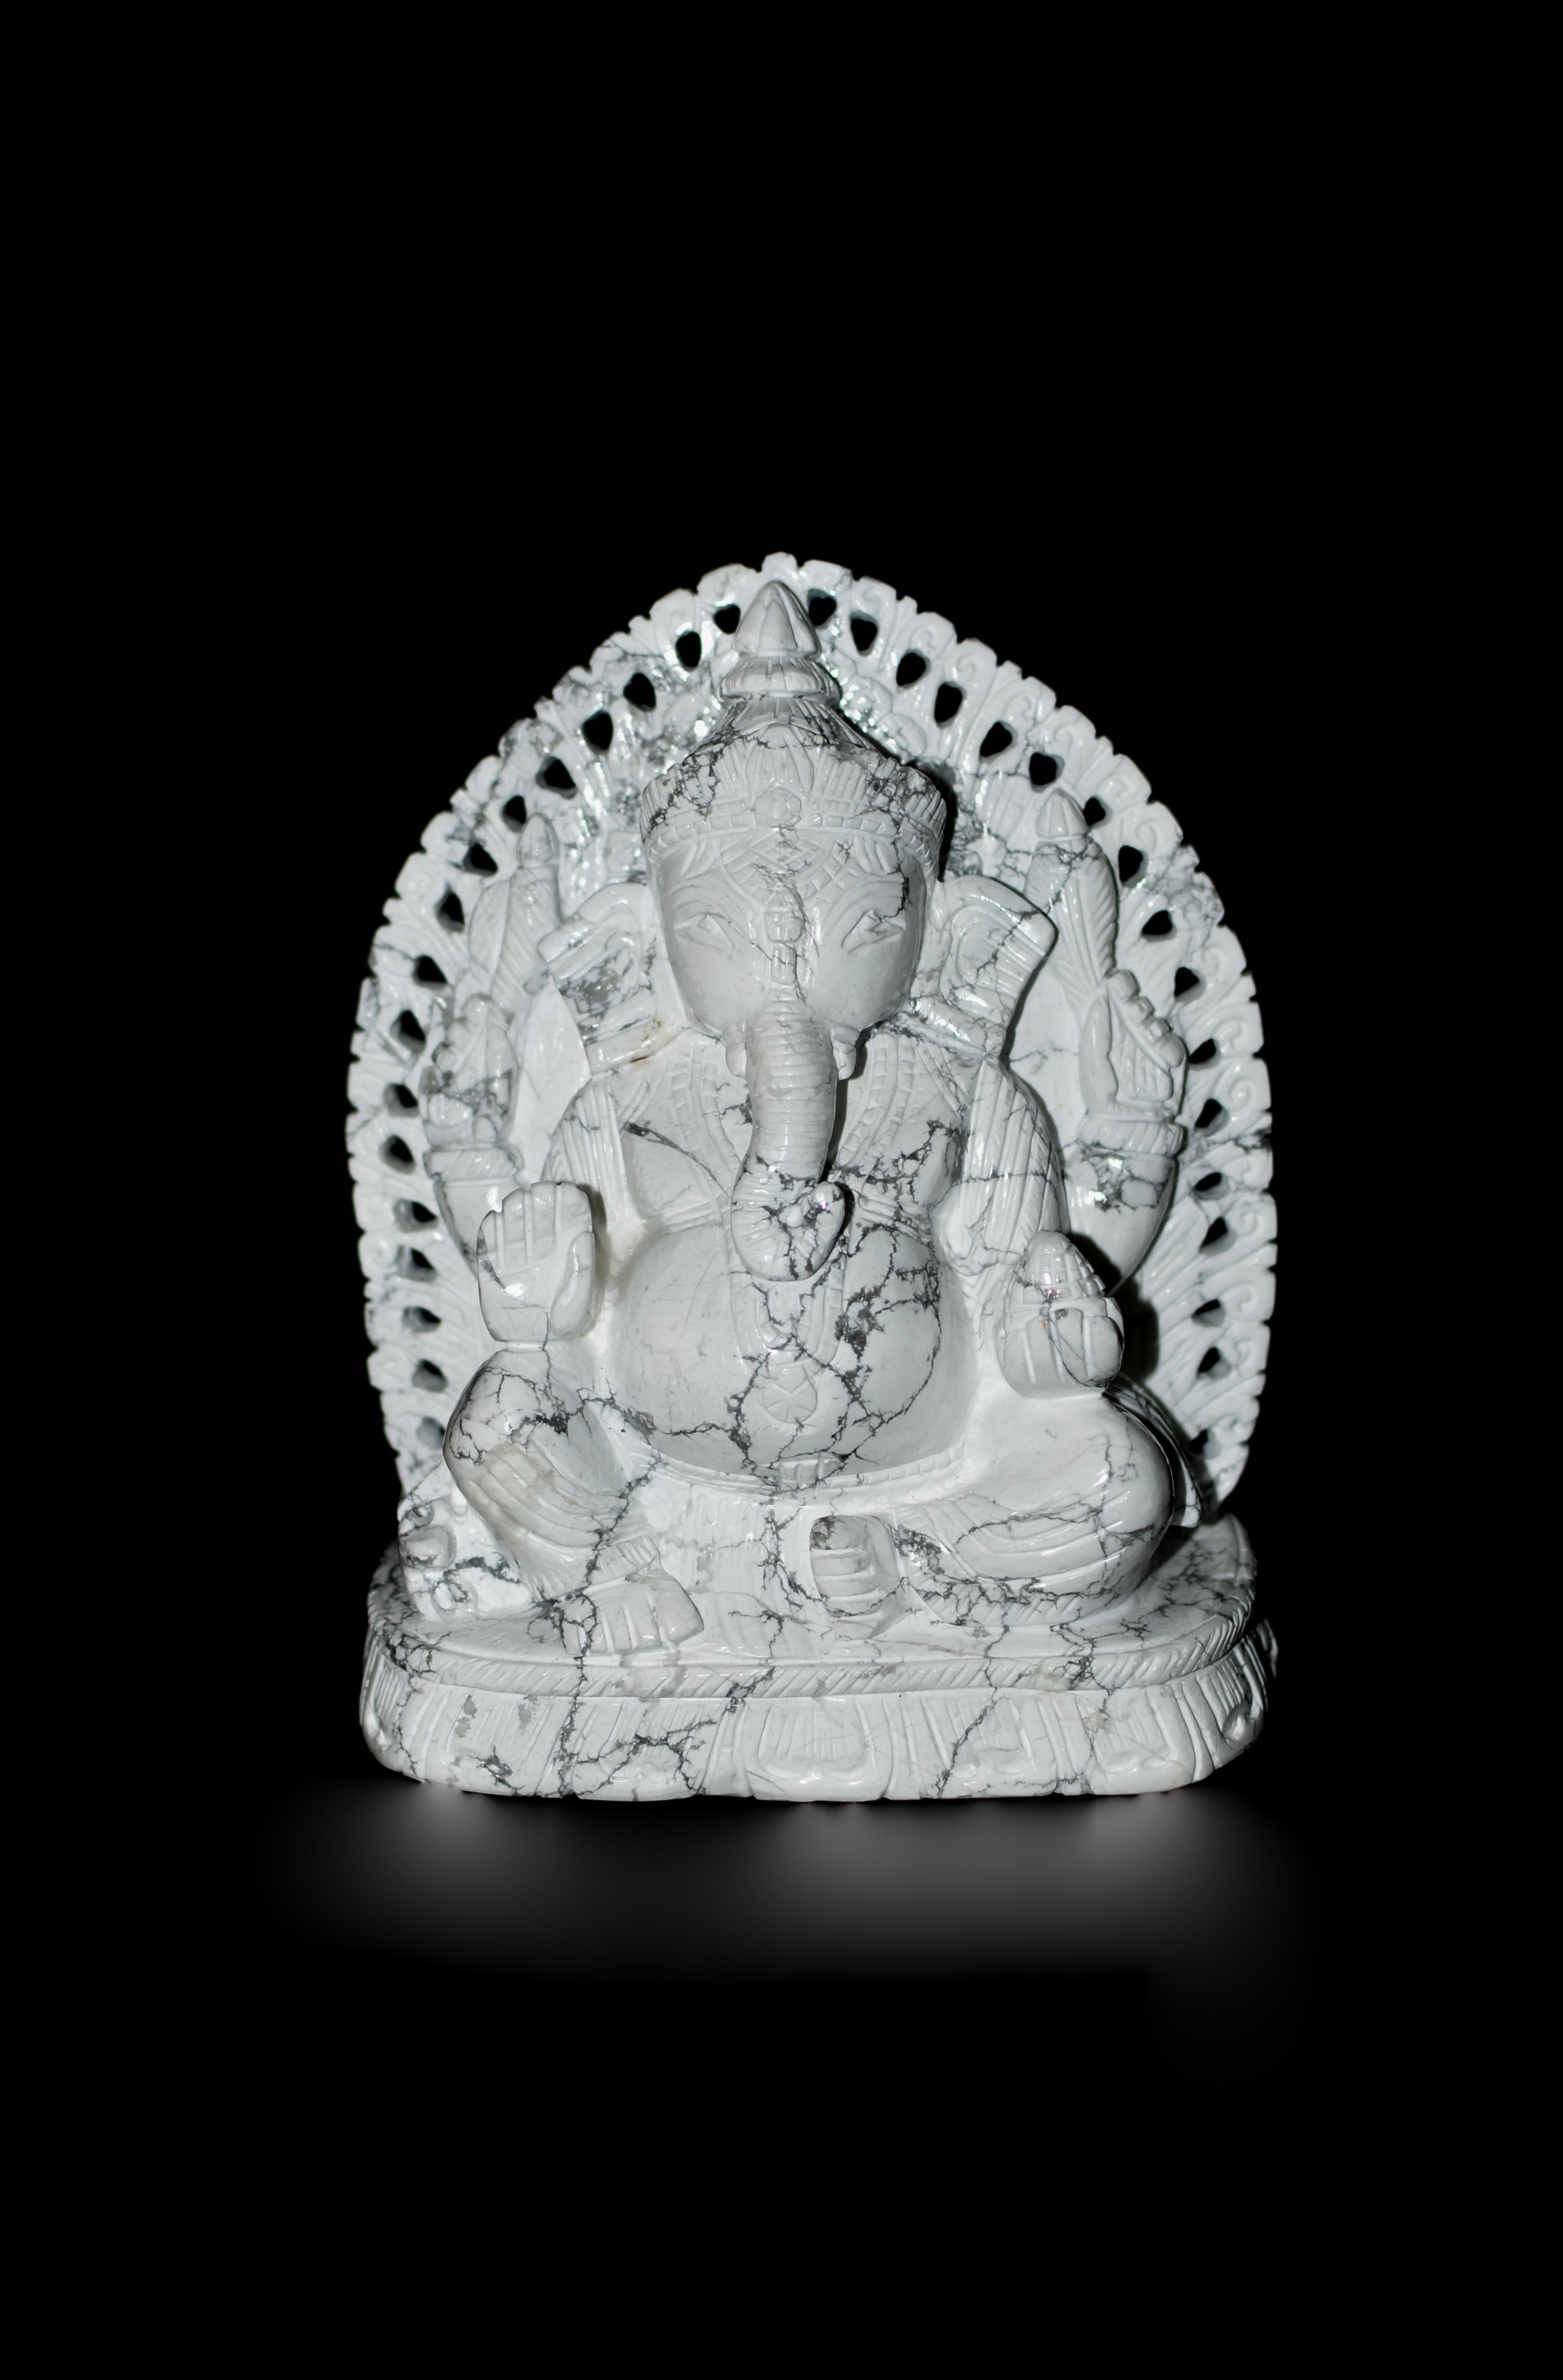 Eine außergewöhnliche, einmalige, 7,2 Pfund schwere Howlite-Edelsteinskulptur von Ganesh, die aus dem feinsten, seltenen, rein natürlichen Howlite-Edelstein gefertigt ist. Jedes Detail wurde sorgfältig ausgearbeitet, von Hand geschnitzt und poliert.